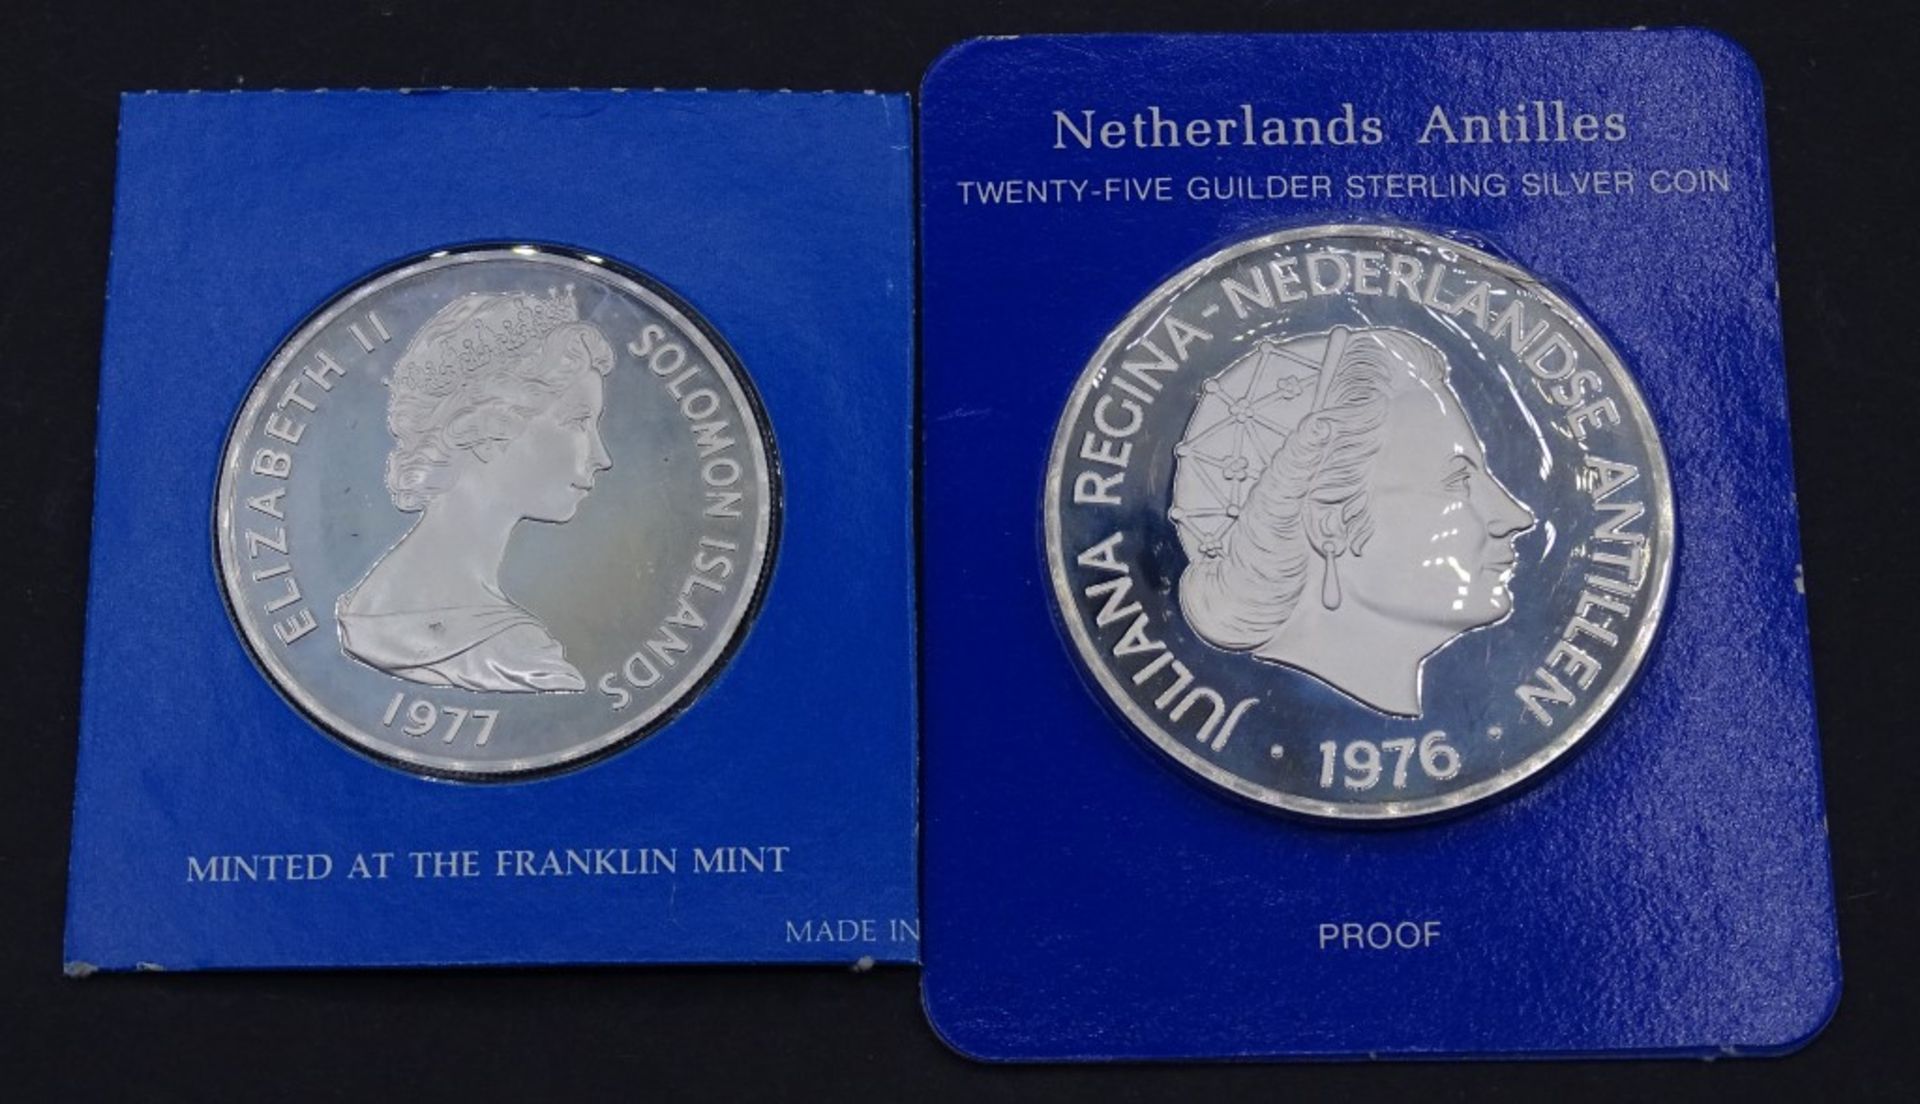 2x Silber Münzen OVP - 25 Gulden 1976 / 5 Dollars 197